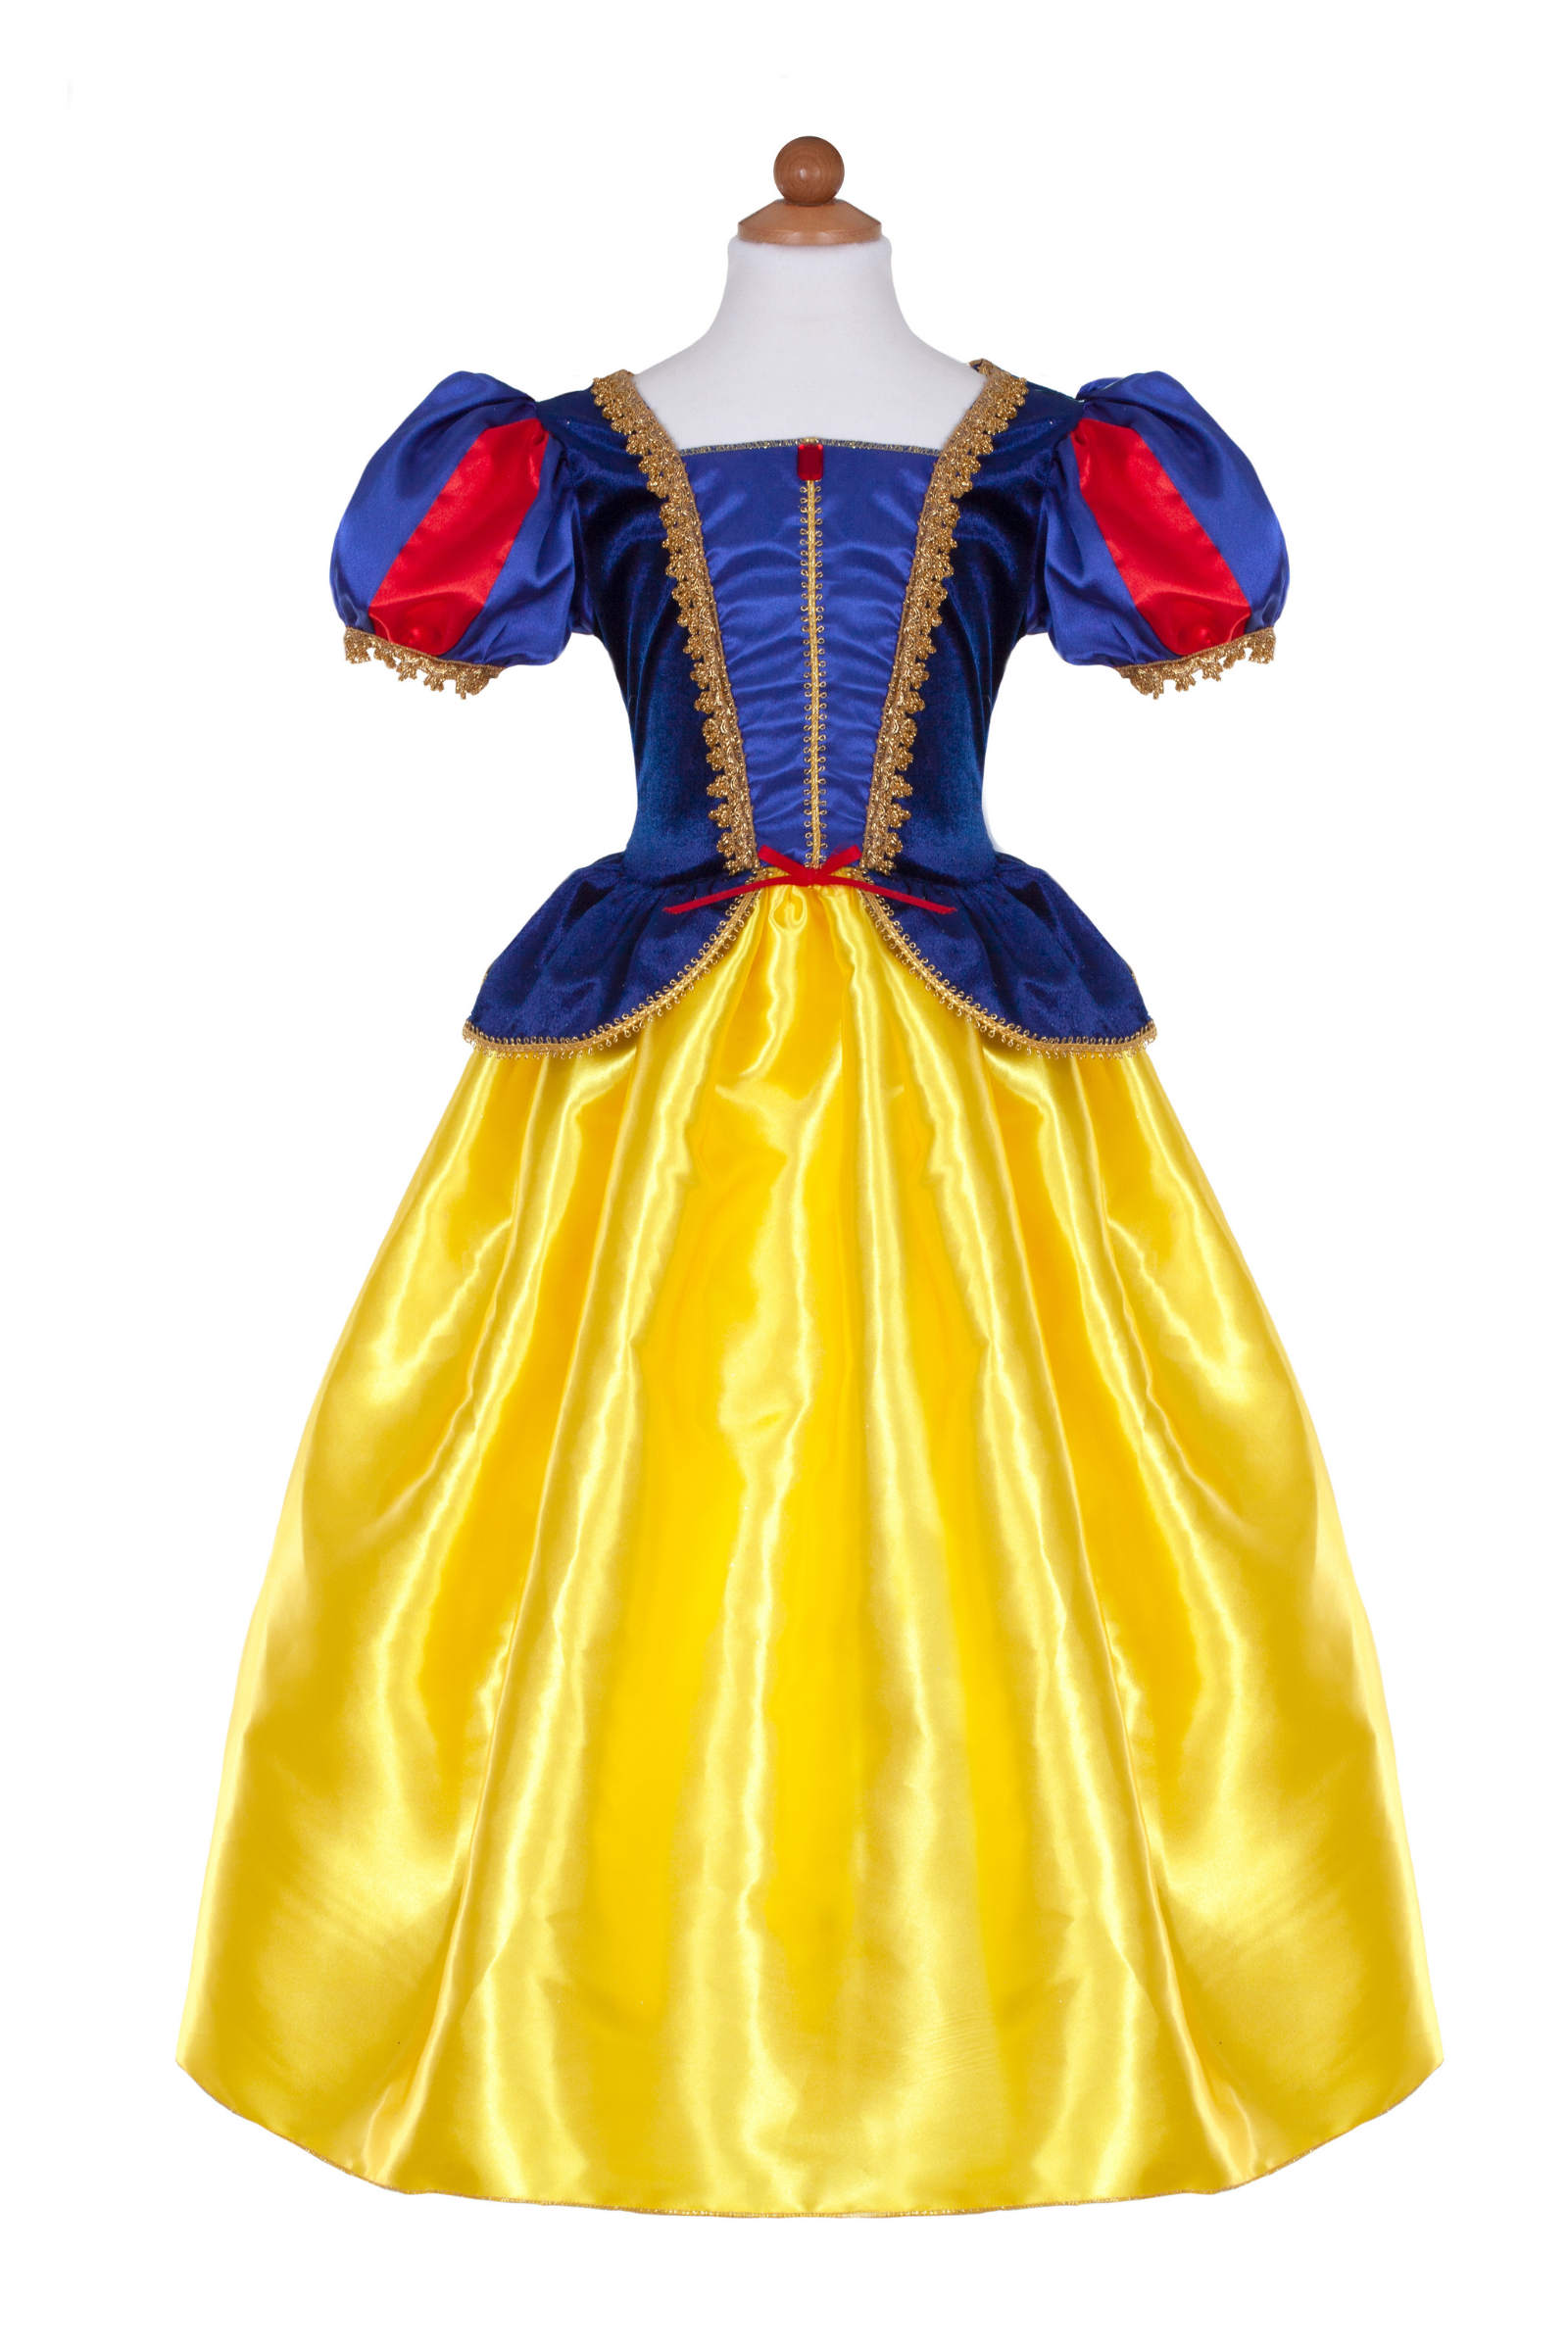 Snow White Dress for Birthday, Snow White Costume, Snow White Outfit - Etsy  | Snow white outfits, Snow white costume, Snow white dresses